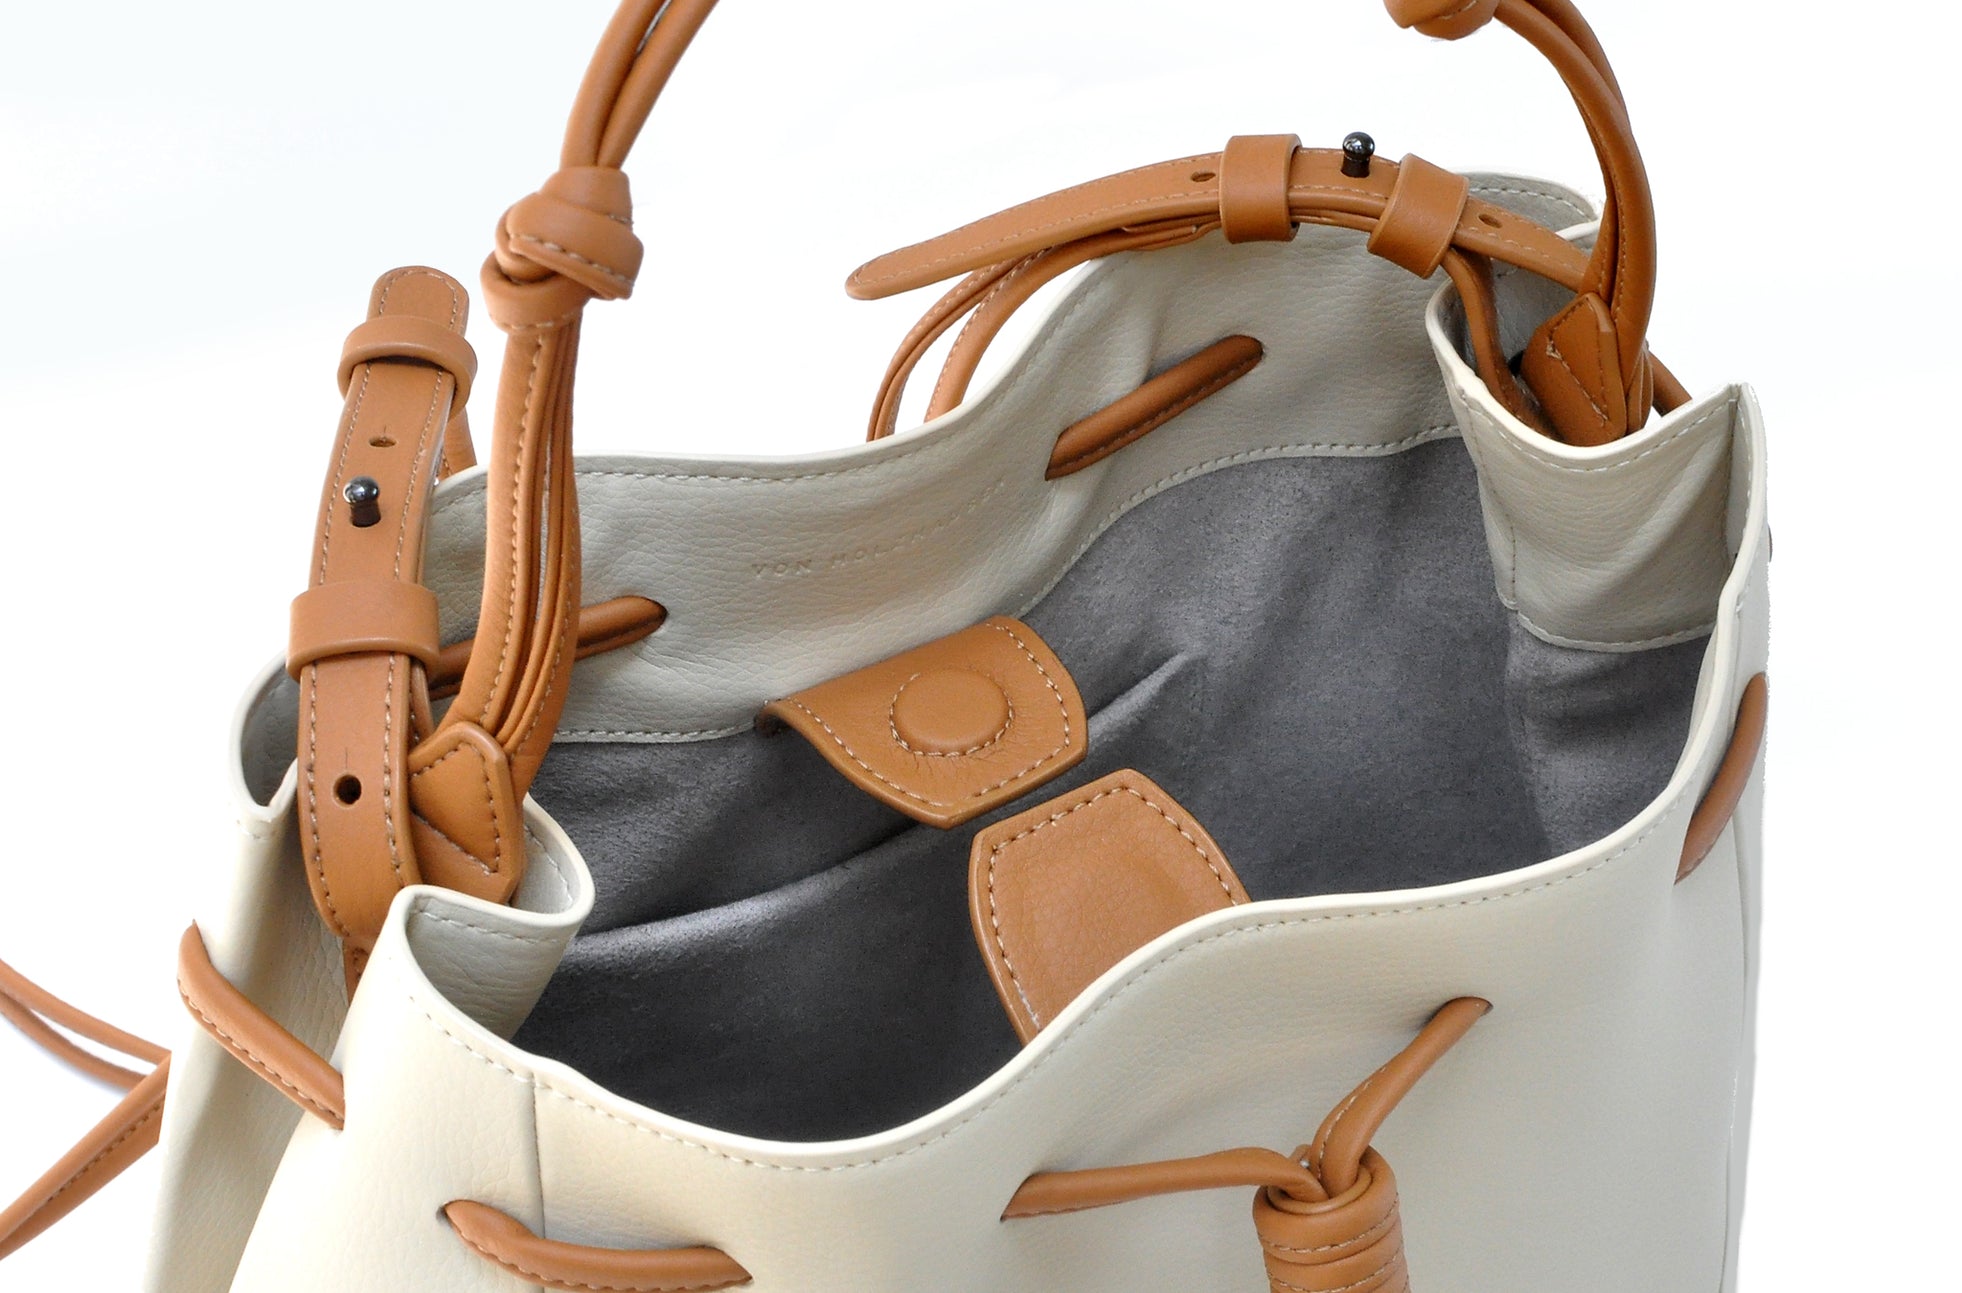 The Bucket Crossbody in Technik-Leather in Oat & Caramel image 5